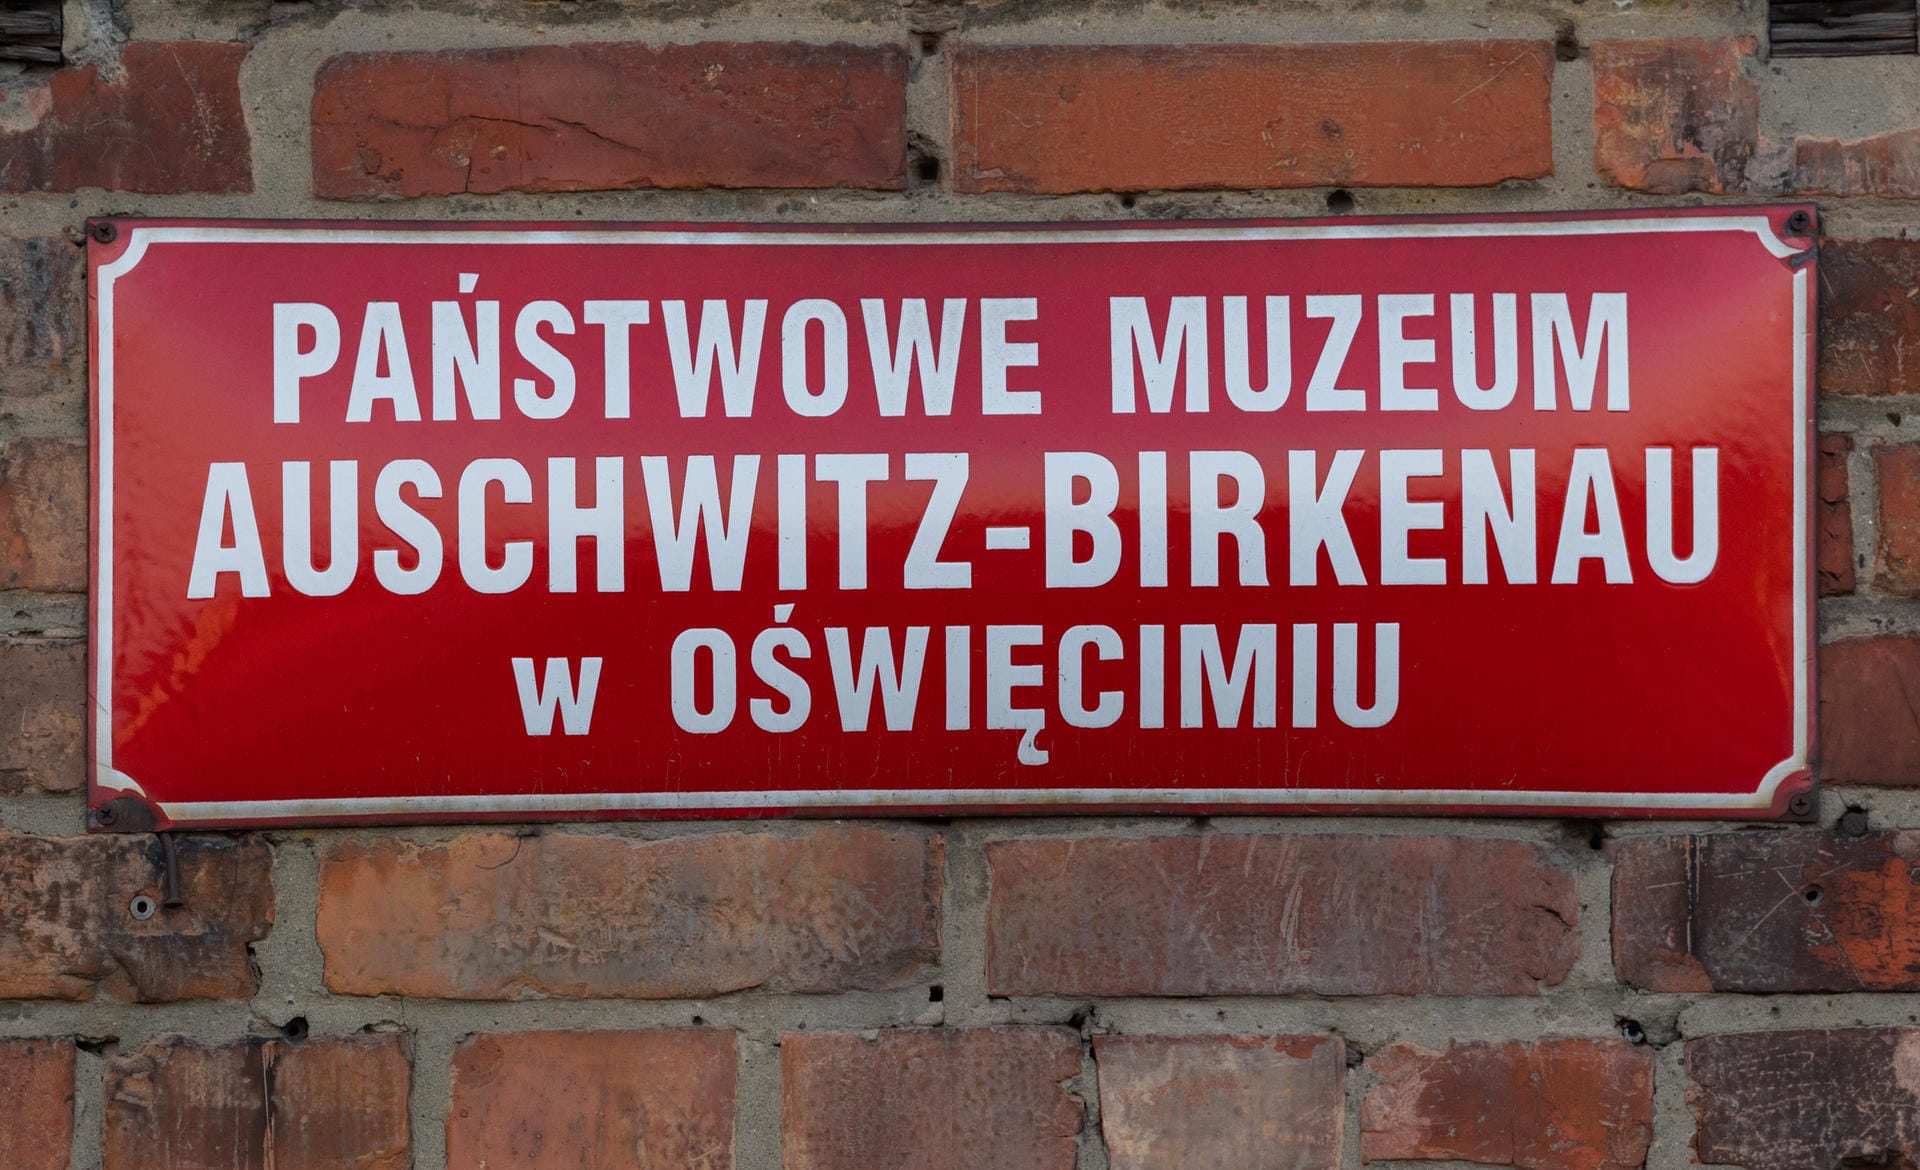 Ein Schild mit der Aufschrift "Staatliches Museum Auschwitz-Birkenau": Bund und Länder wollen für die Erhaltung der Gedenkstätte insgesamt 60 Millionen Euro zur Verfügung stellen.